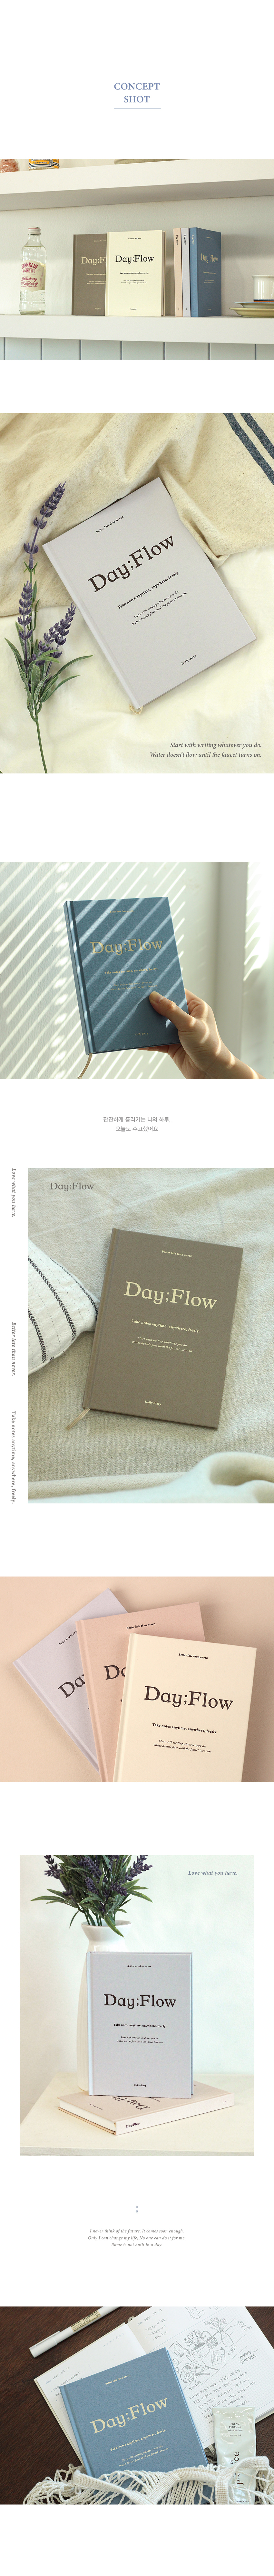 dayflow_05.jpg